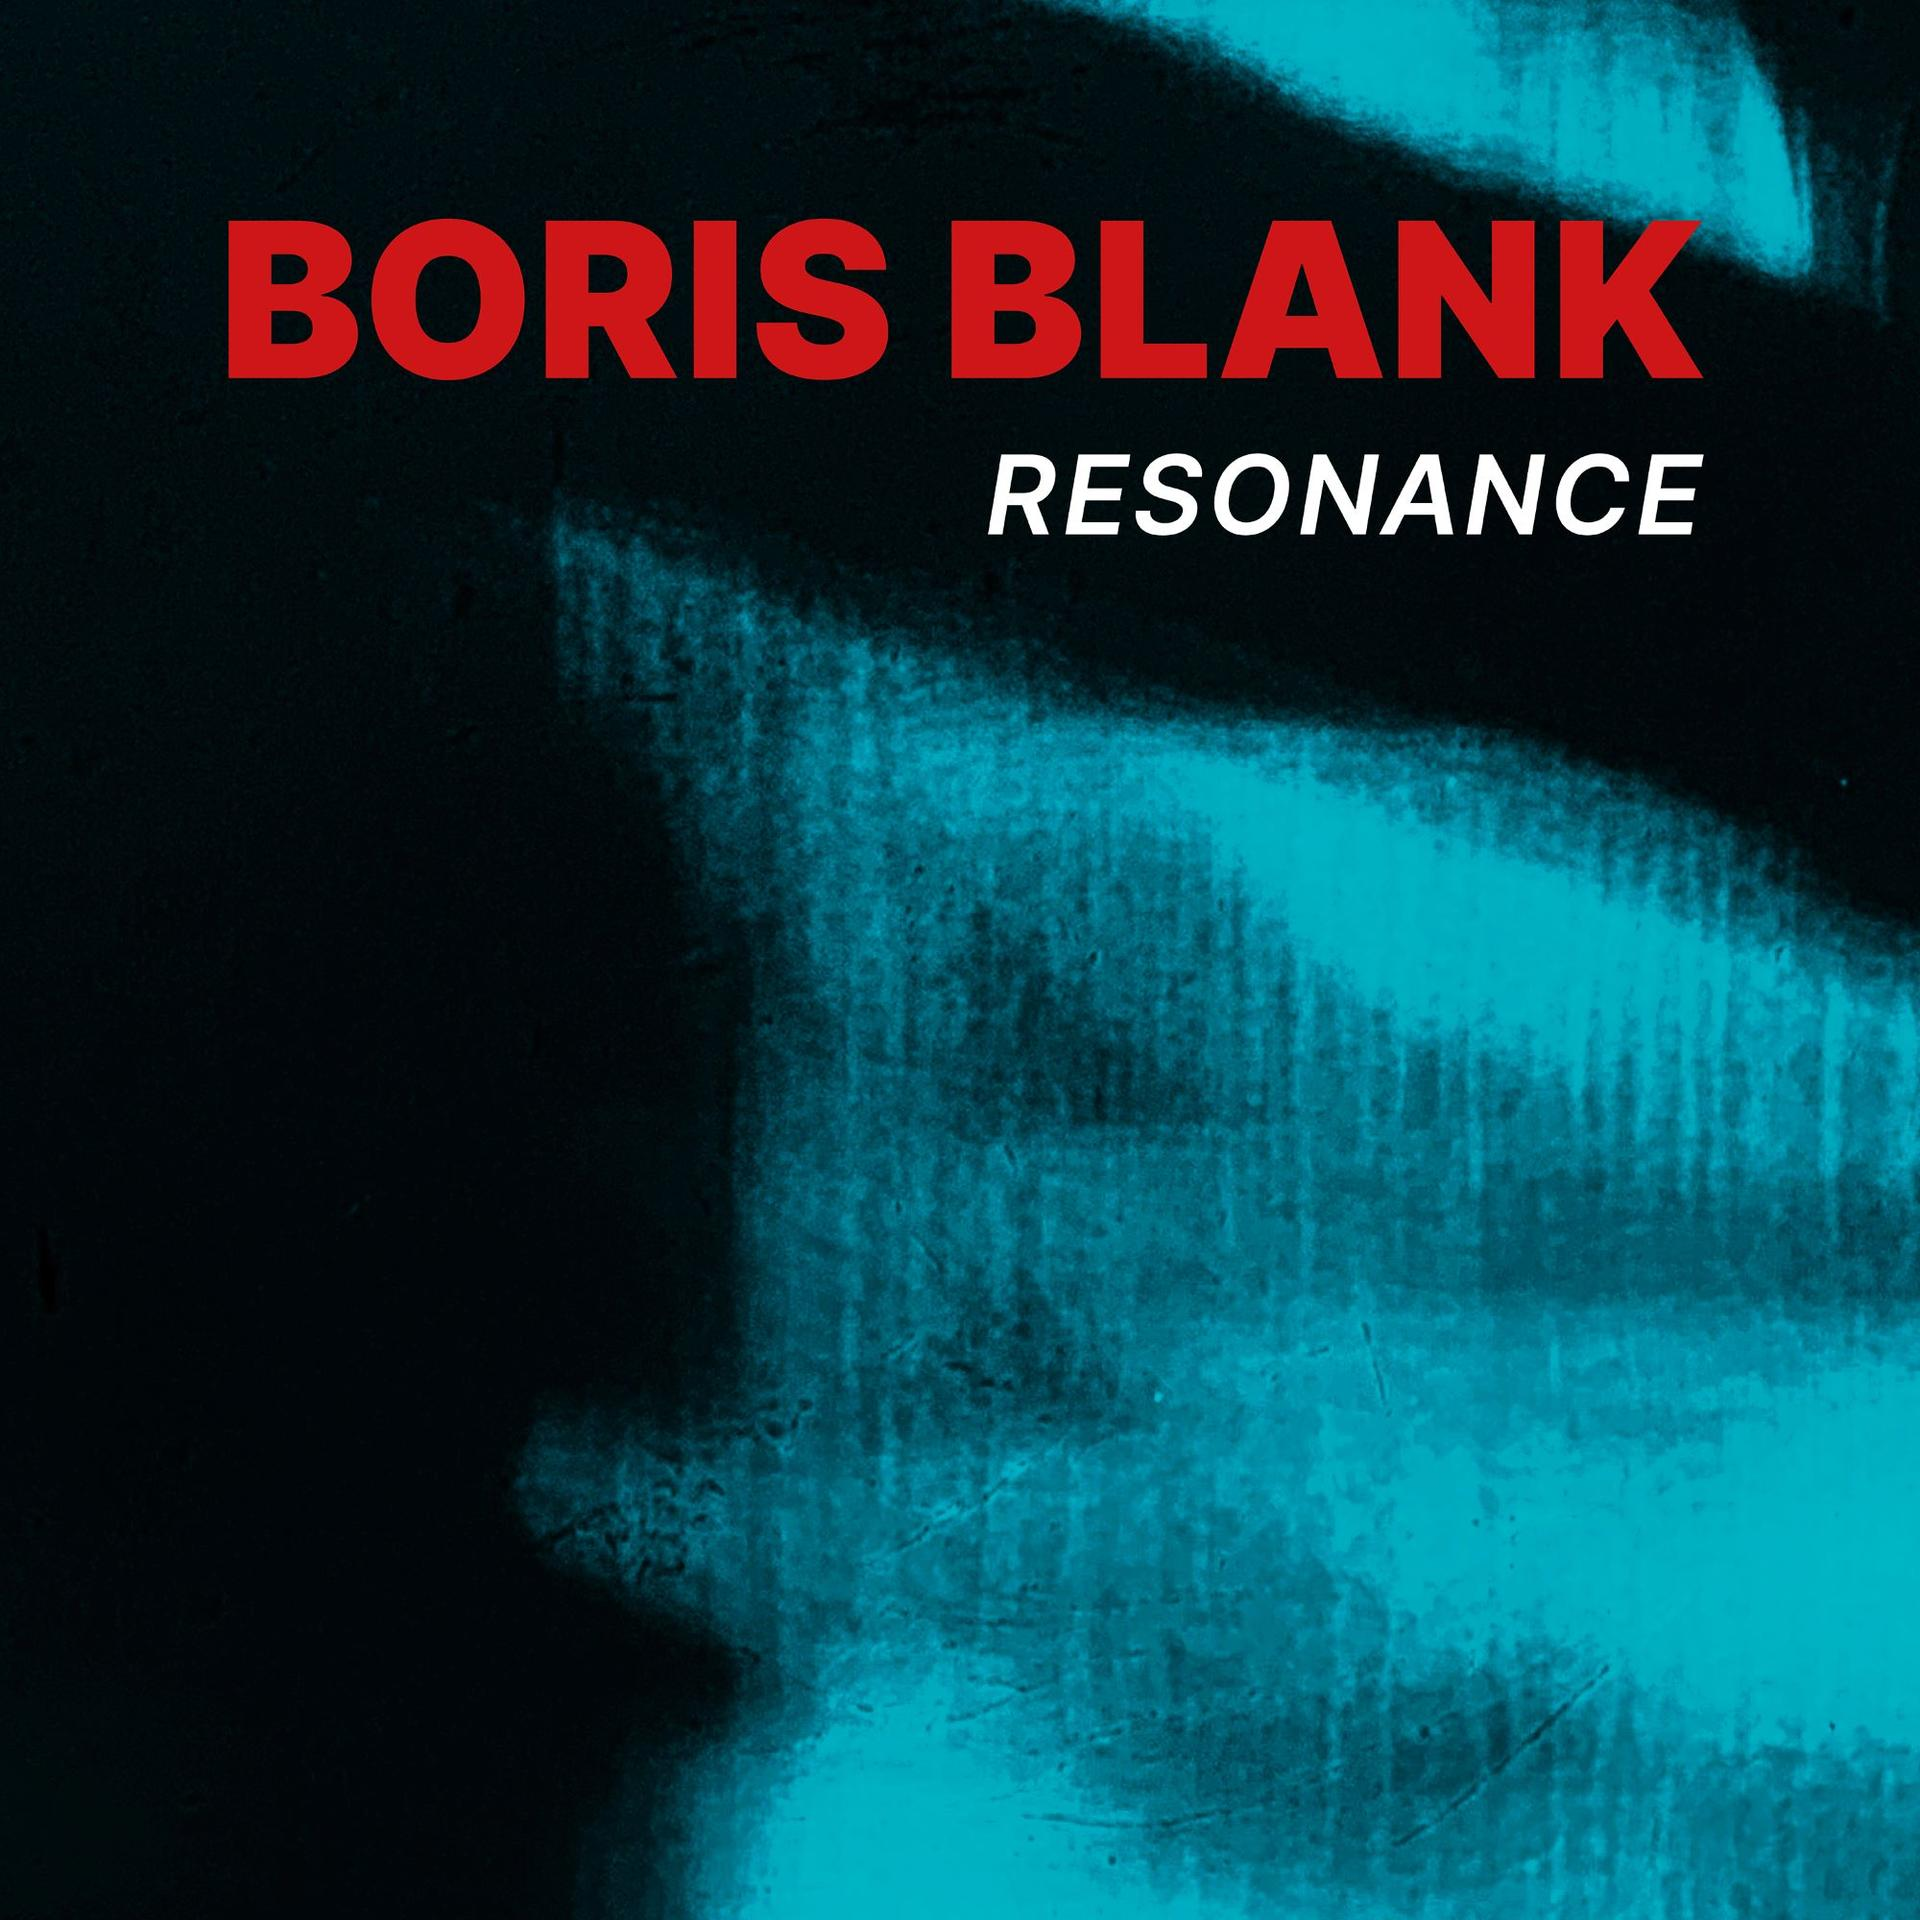 Boris Blank - Blu-ray (CD + - Audio) (CD+BR) Resonance